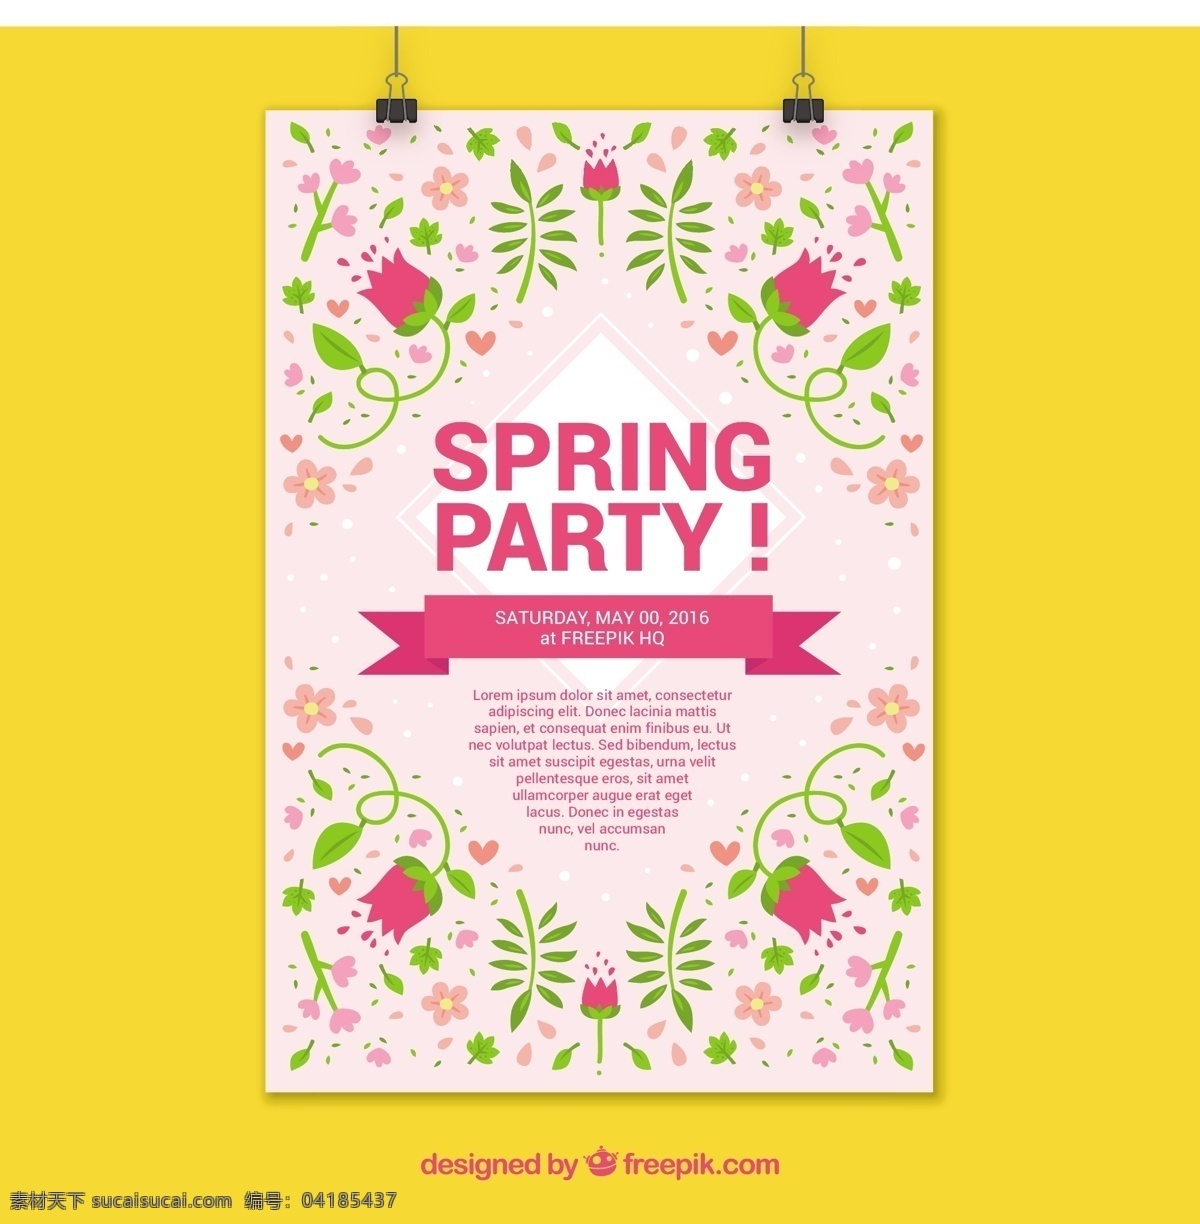 粉红色 花 春季 聚会 海报 花卉 音乐 宣传单 派对 模板 舞蹈 庆典 节日 迪斯科 彩色 声音 传单模板 文具 符号 海报模板 黄色